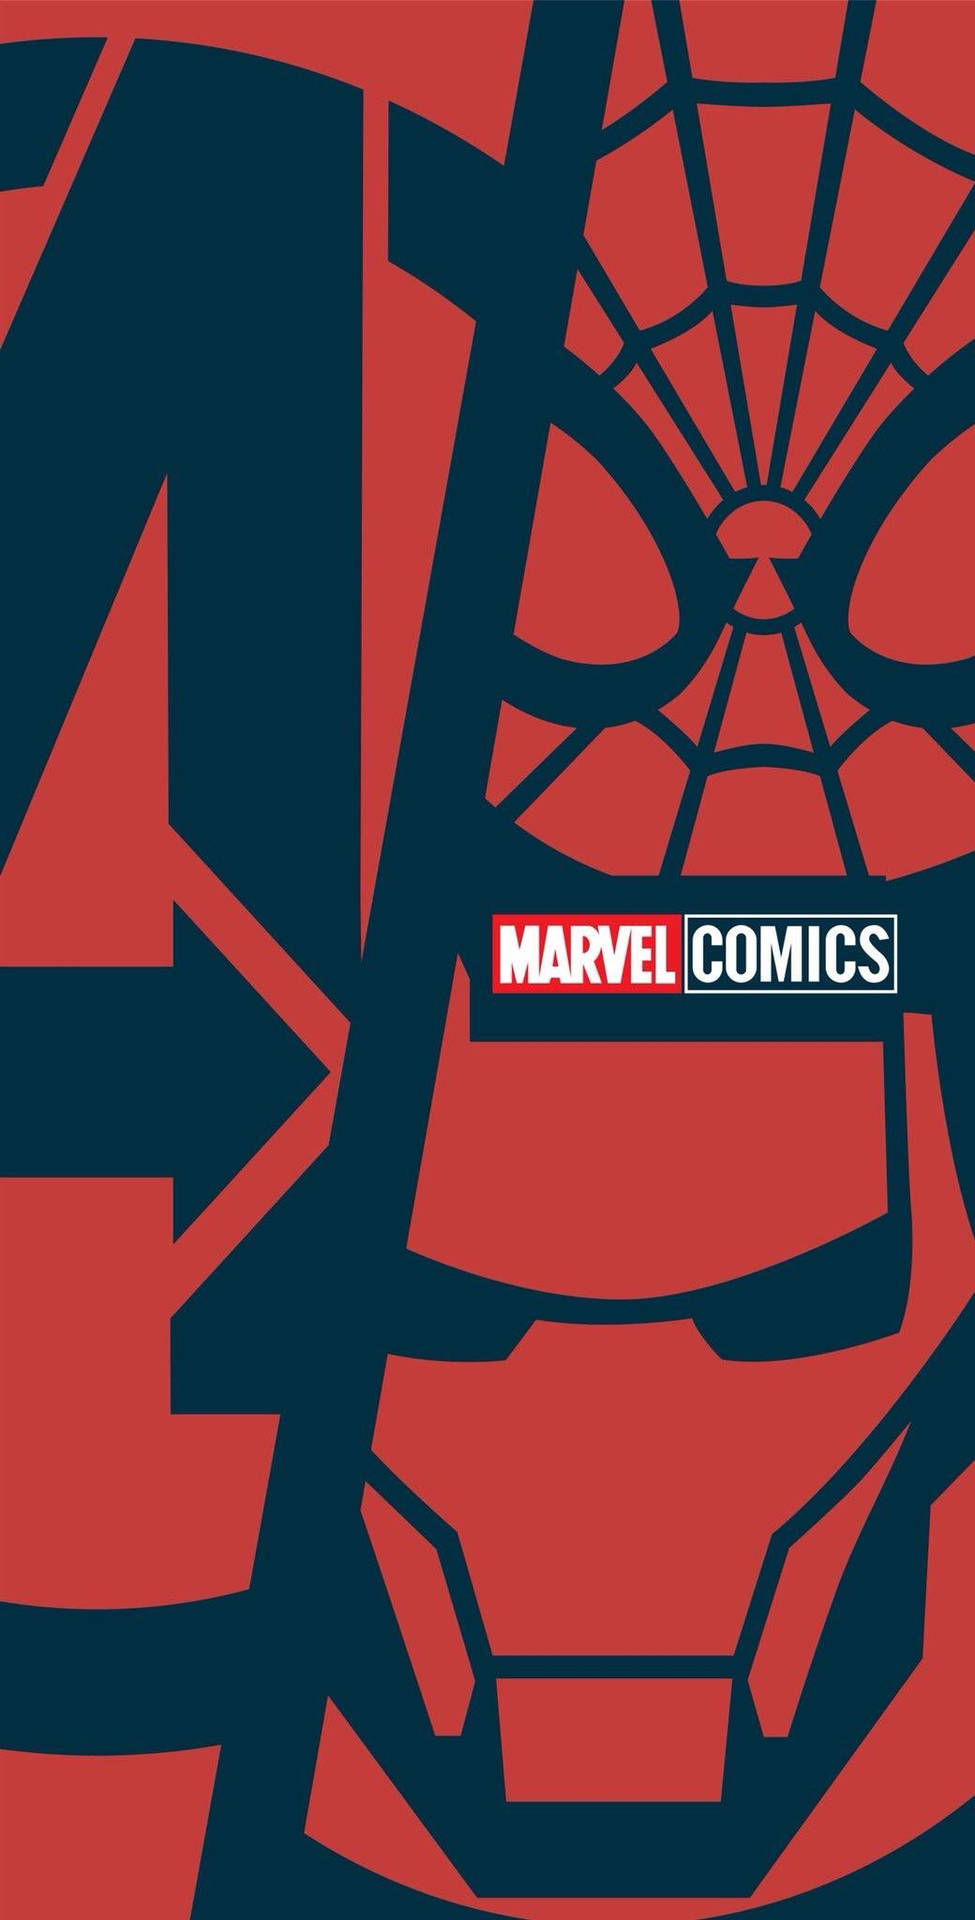 Marvel Comics Poster iPhone X Wallpaper